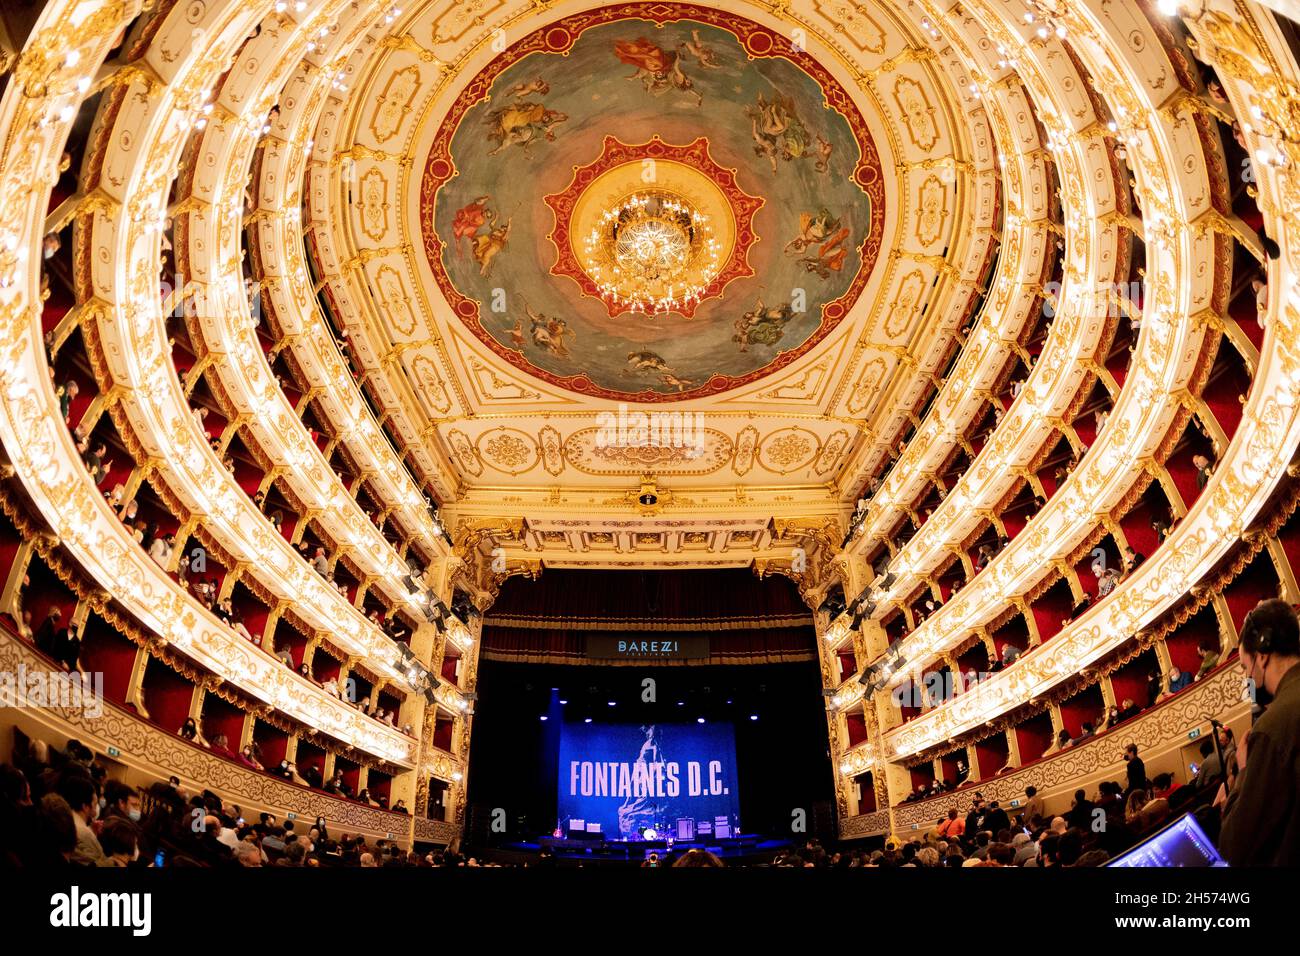 Parma Italy 06 Novembre 2021 Fontaines D.C. concerto live show concerto concerto concerto concerto - Barezzi Festival - Live at Teatro Regio © Andrea Ripamonti / Alamy Foto Stock